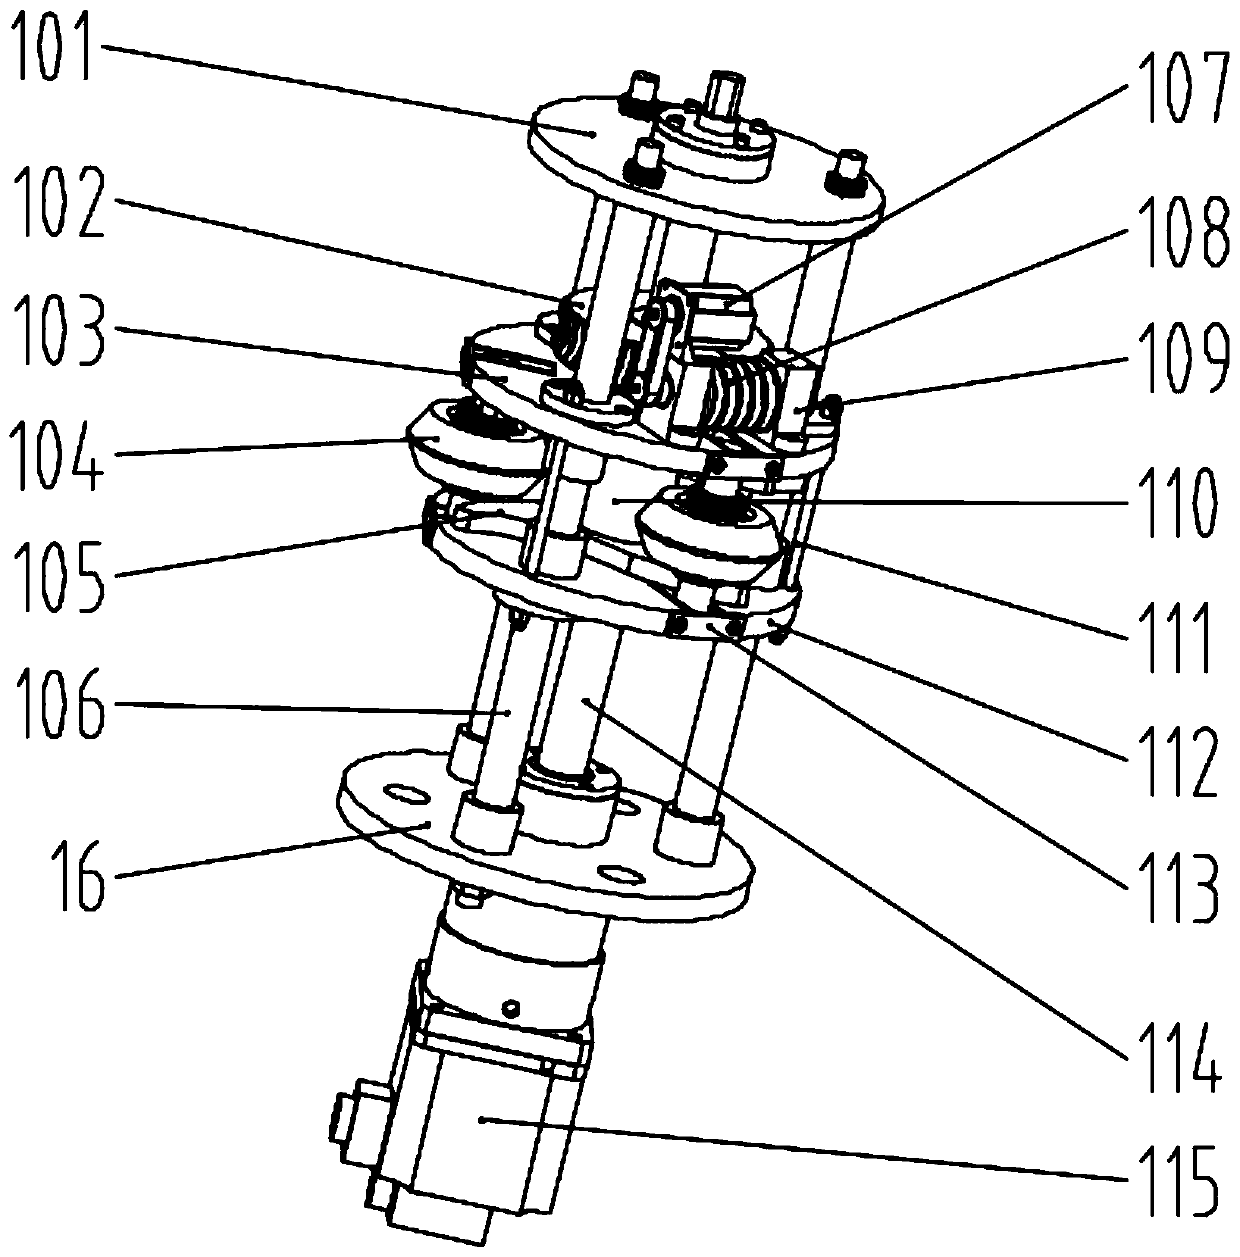 Inner spinning feeding device for bottom plate of opposite-wheel driving power spinning equipment